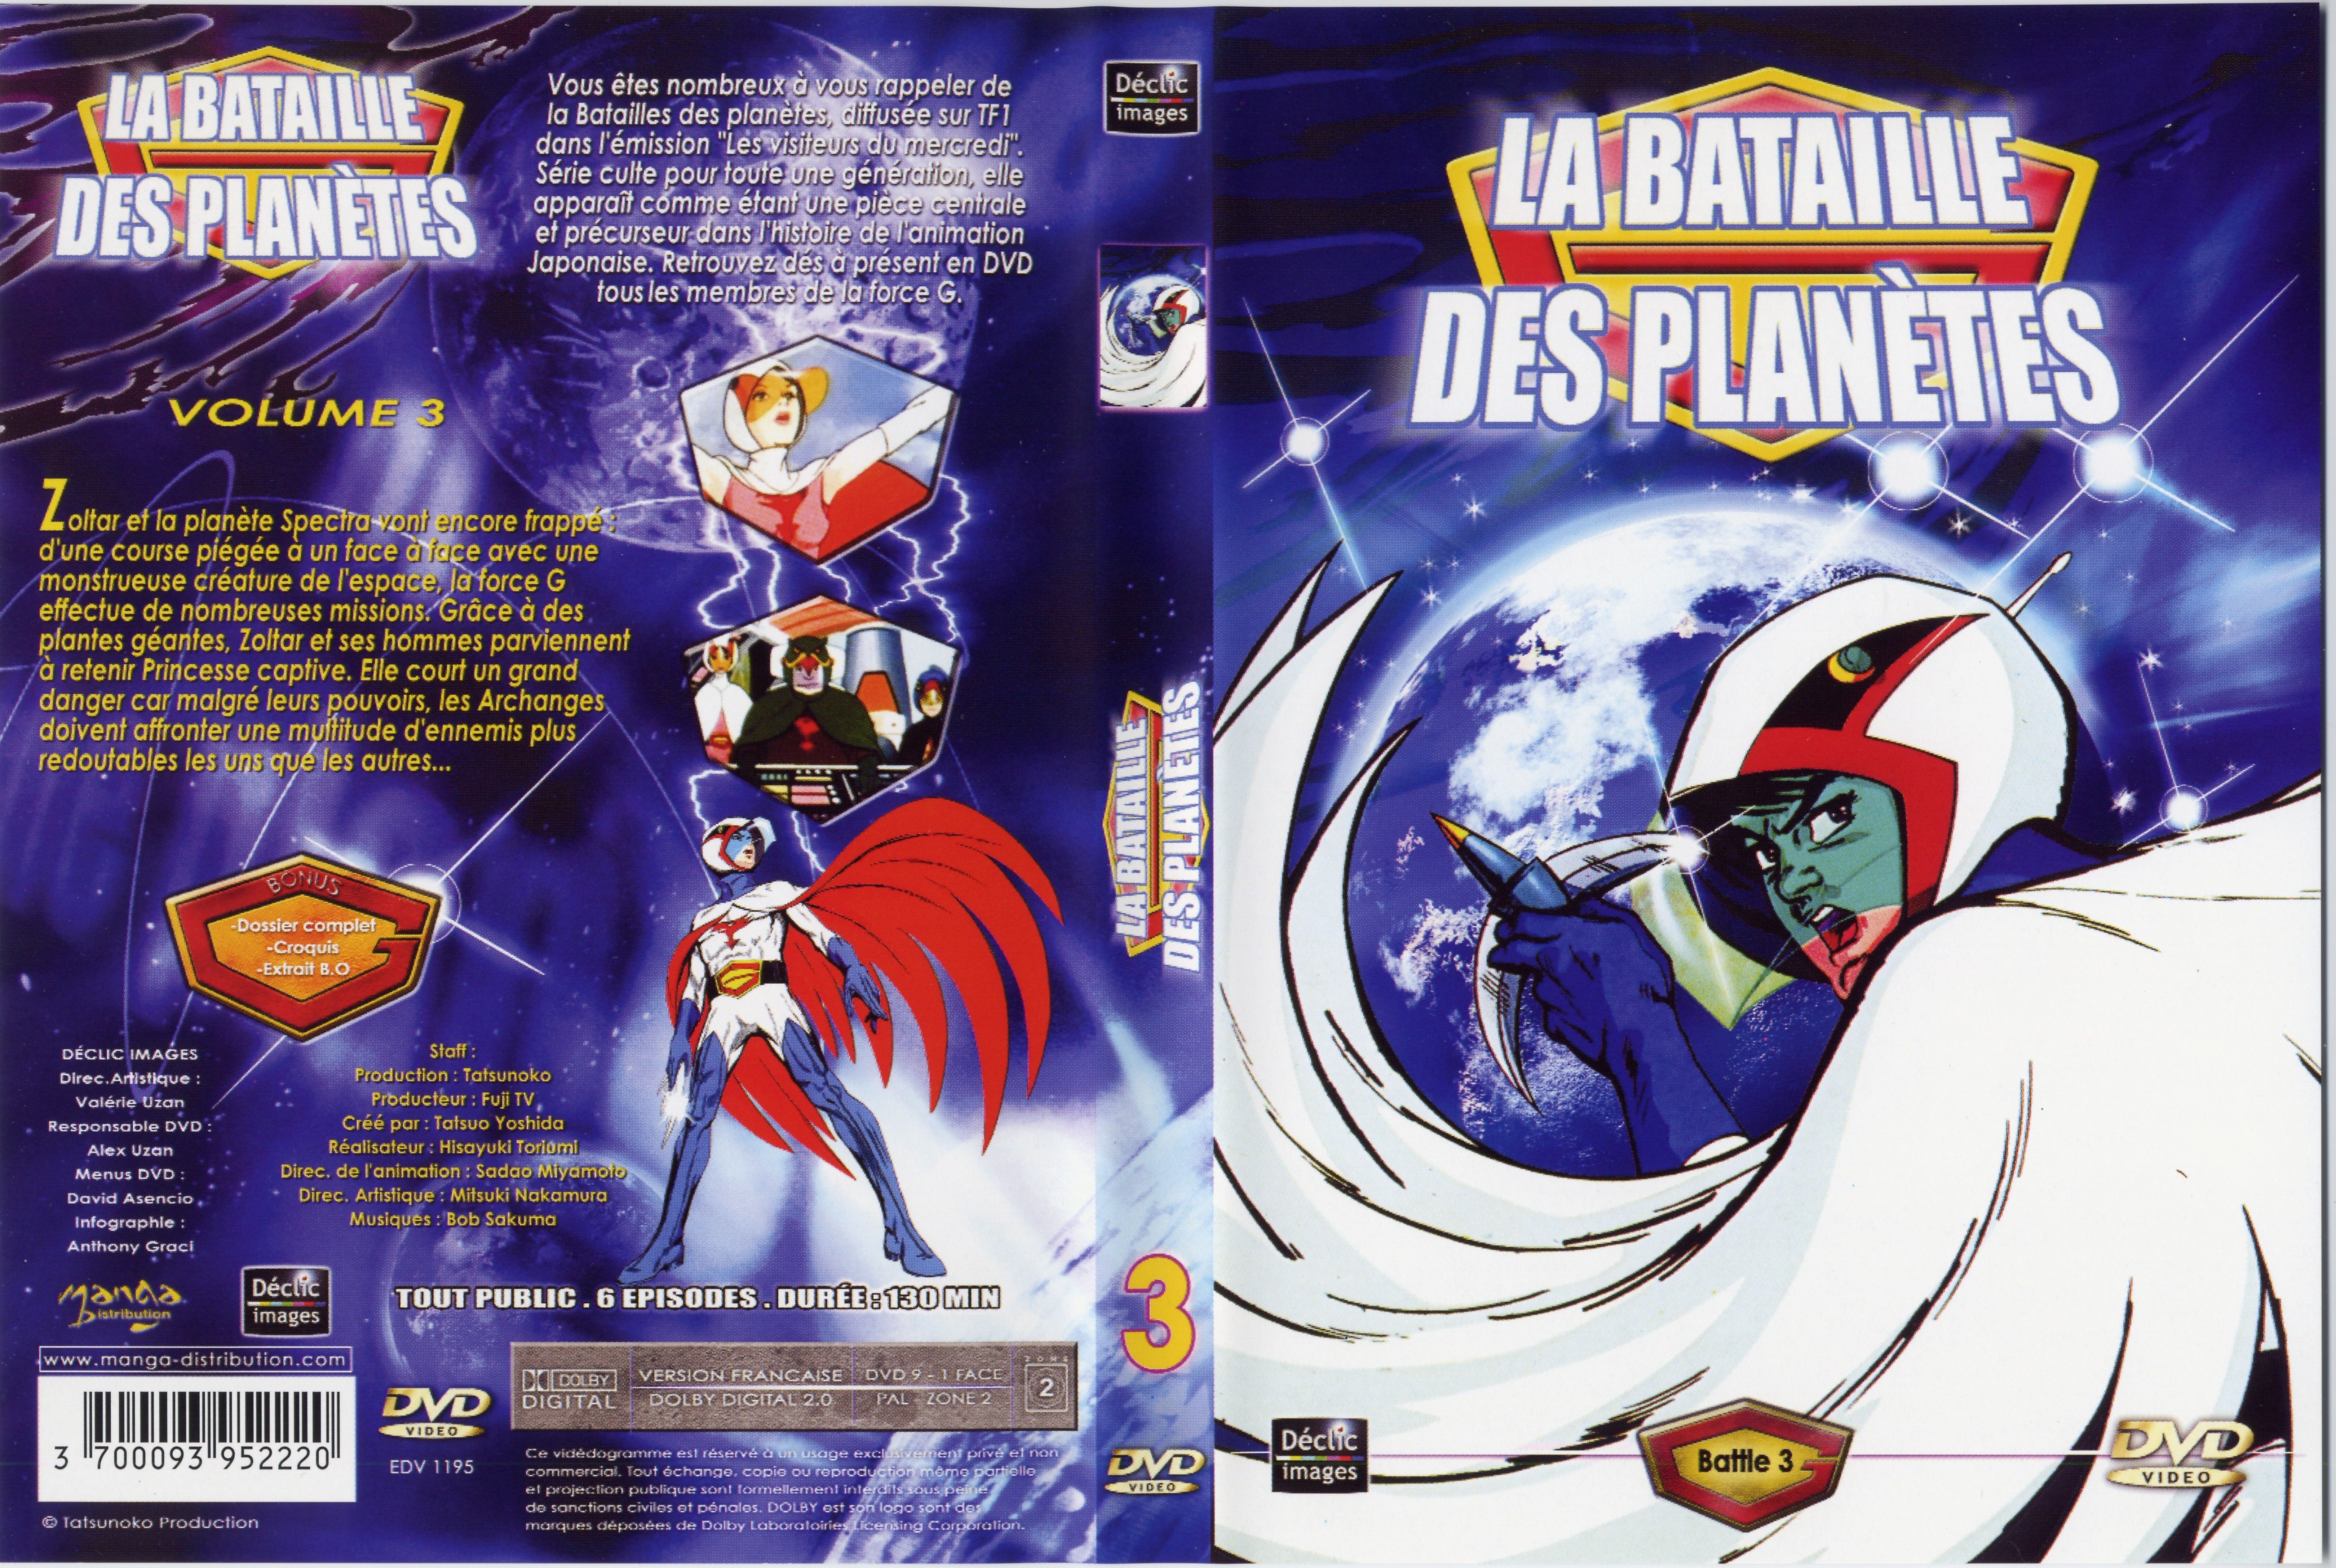 Jaquette DVD La bataille des planetes DVD 03